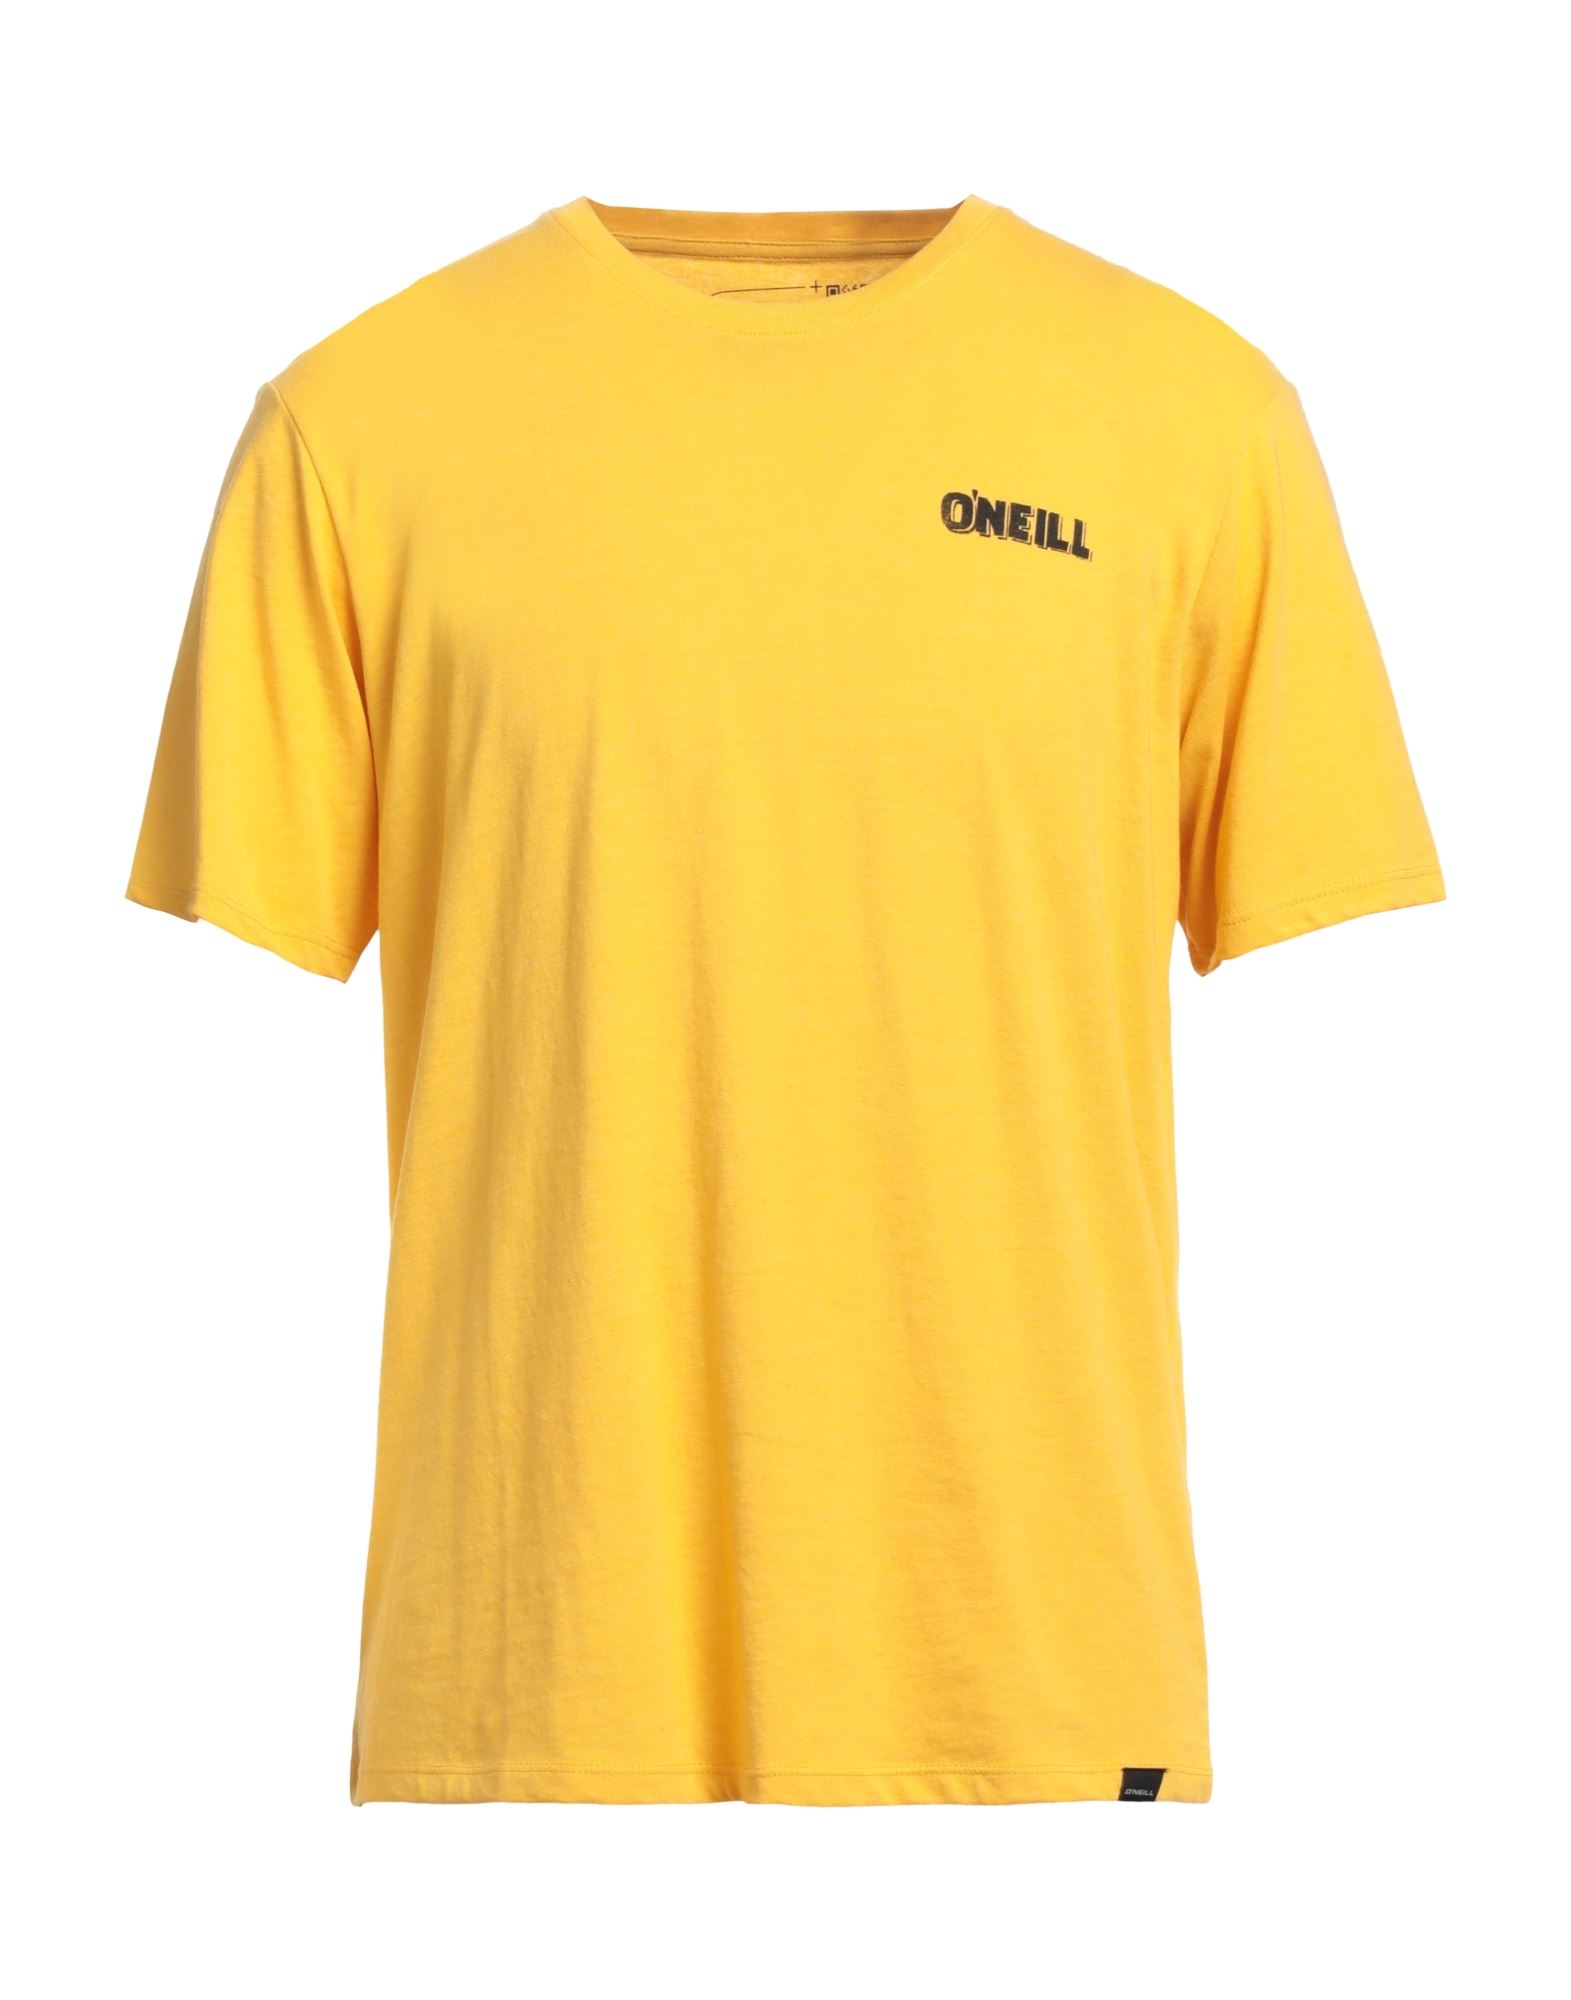 O'NEILL T-shirts Herren Gelb von O'NEILL